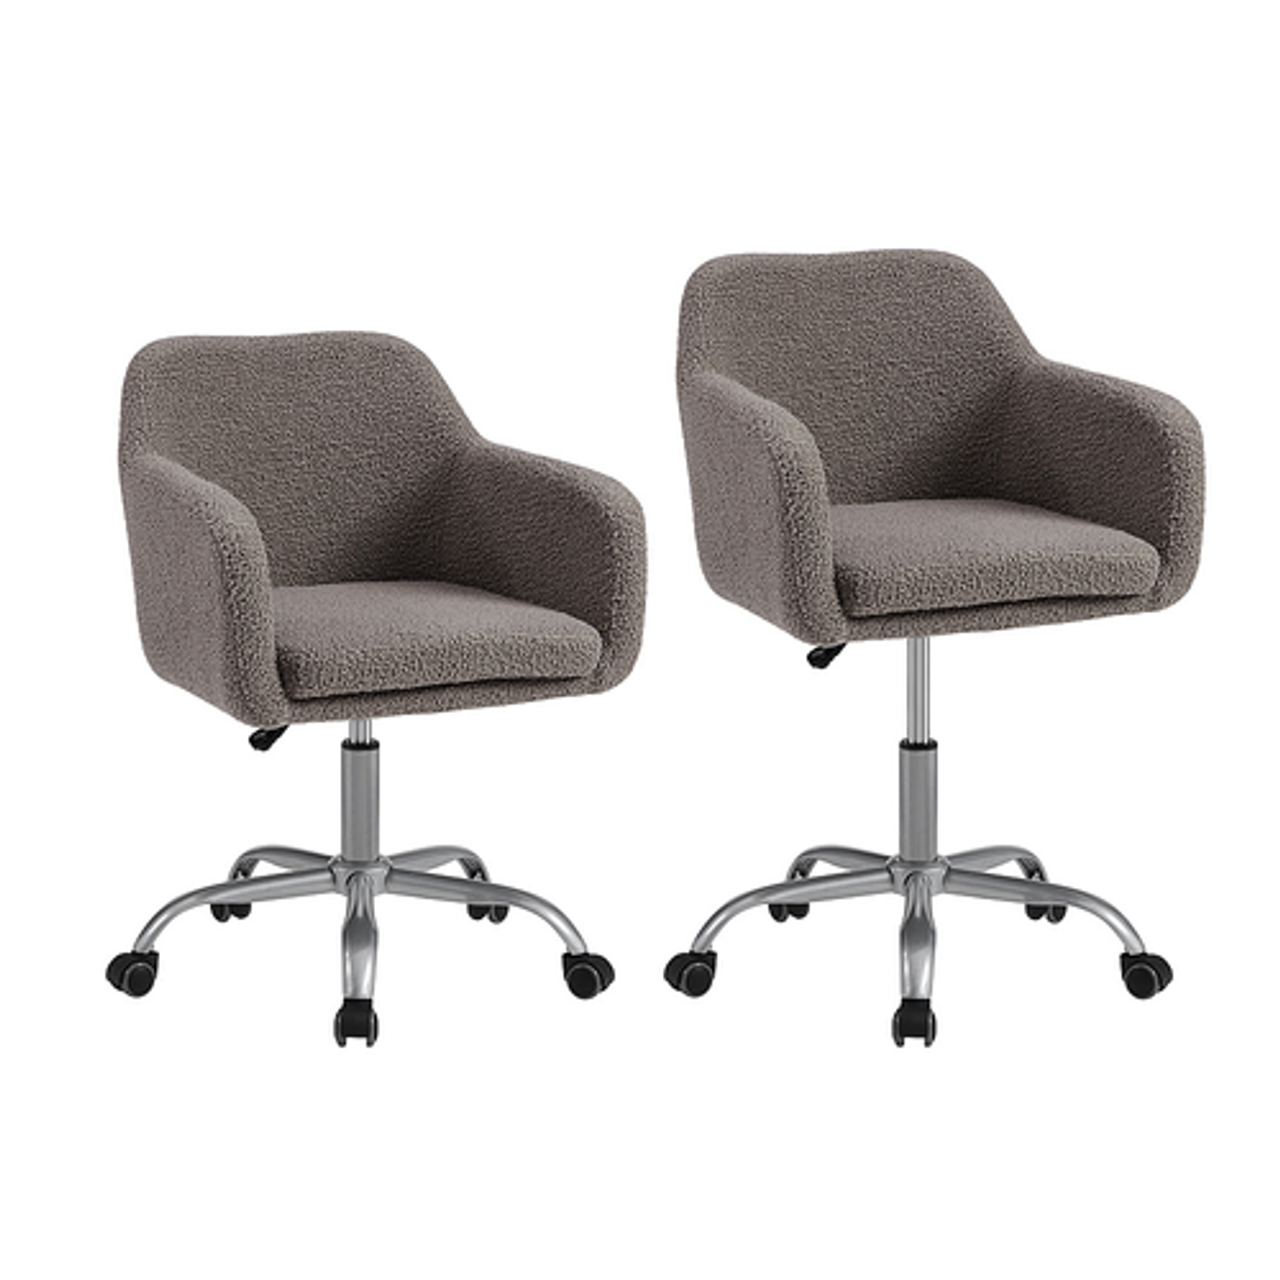 Linon Home Décor - Carvel Office Chair - Gray